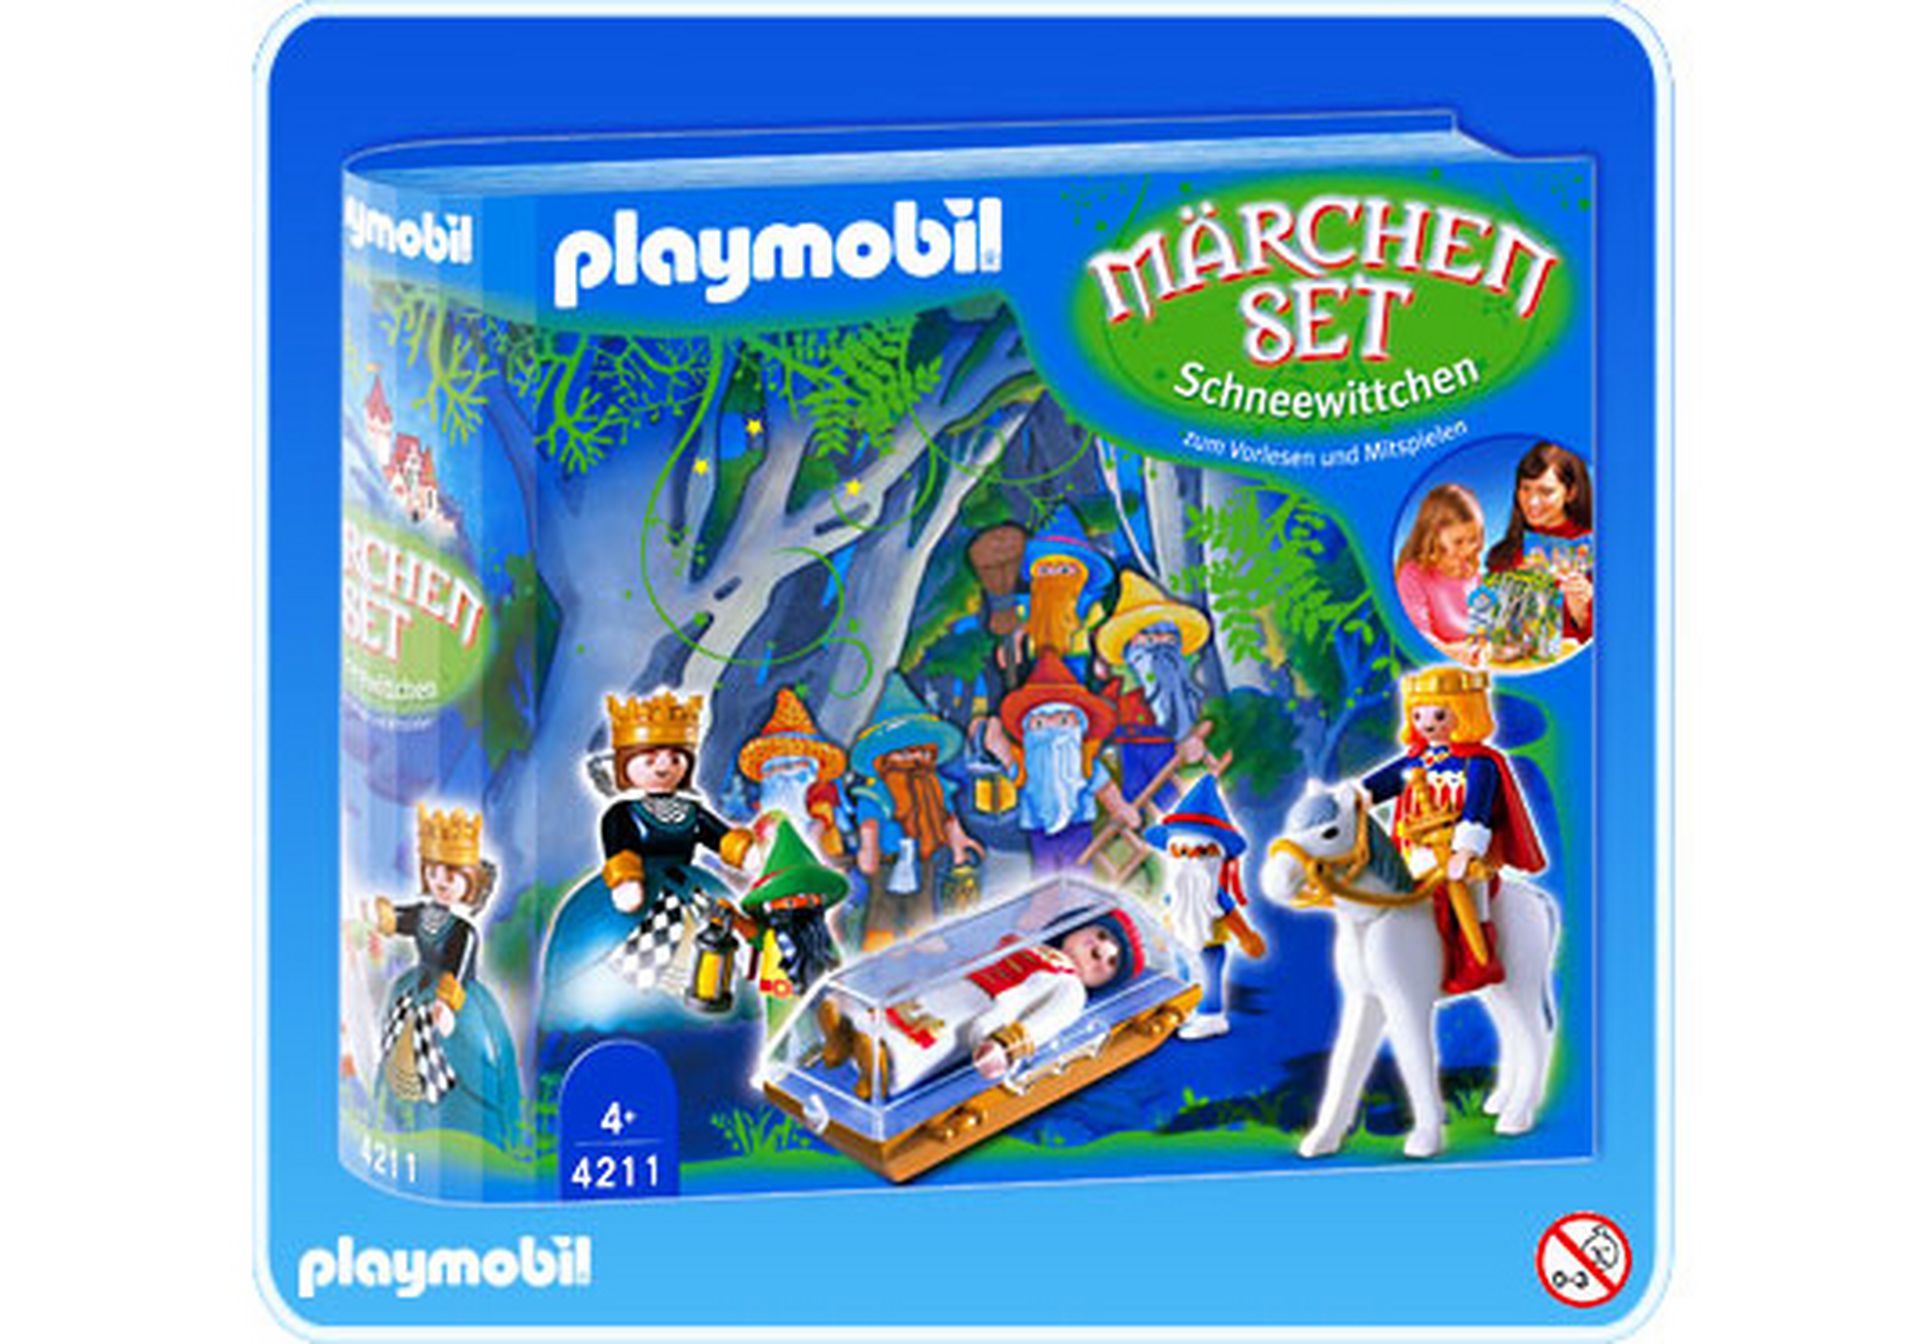 Playmobil 4211 Märchen Schneewitchen  Ersatzteile  Zubehör  zum aussuchen #PM117 